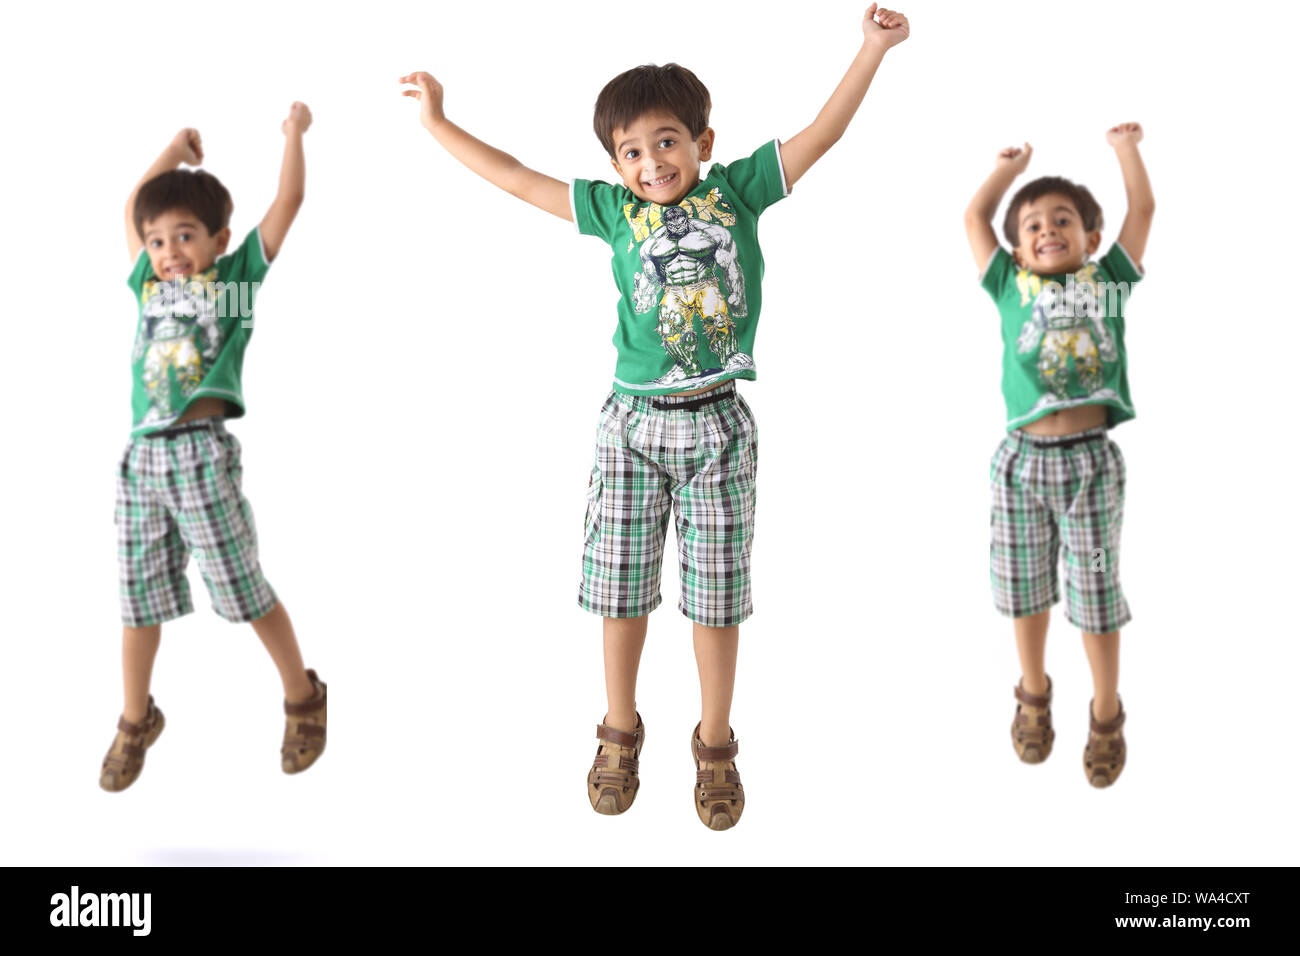 Immagini multiple di un ragazzo che salta in aria e sorride Foto Stock